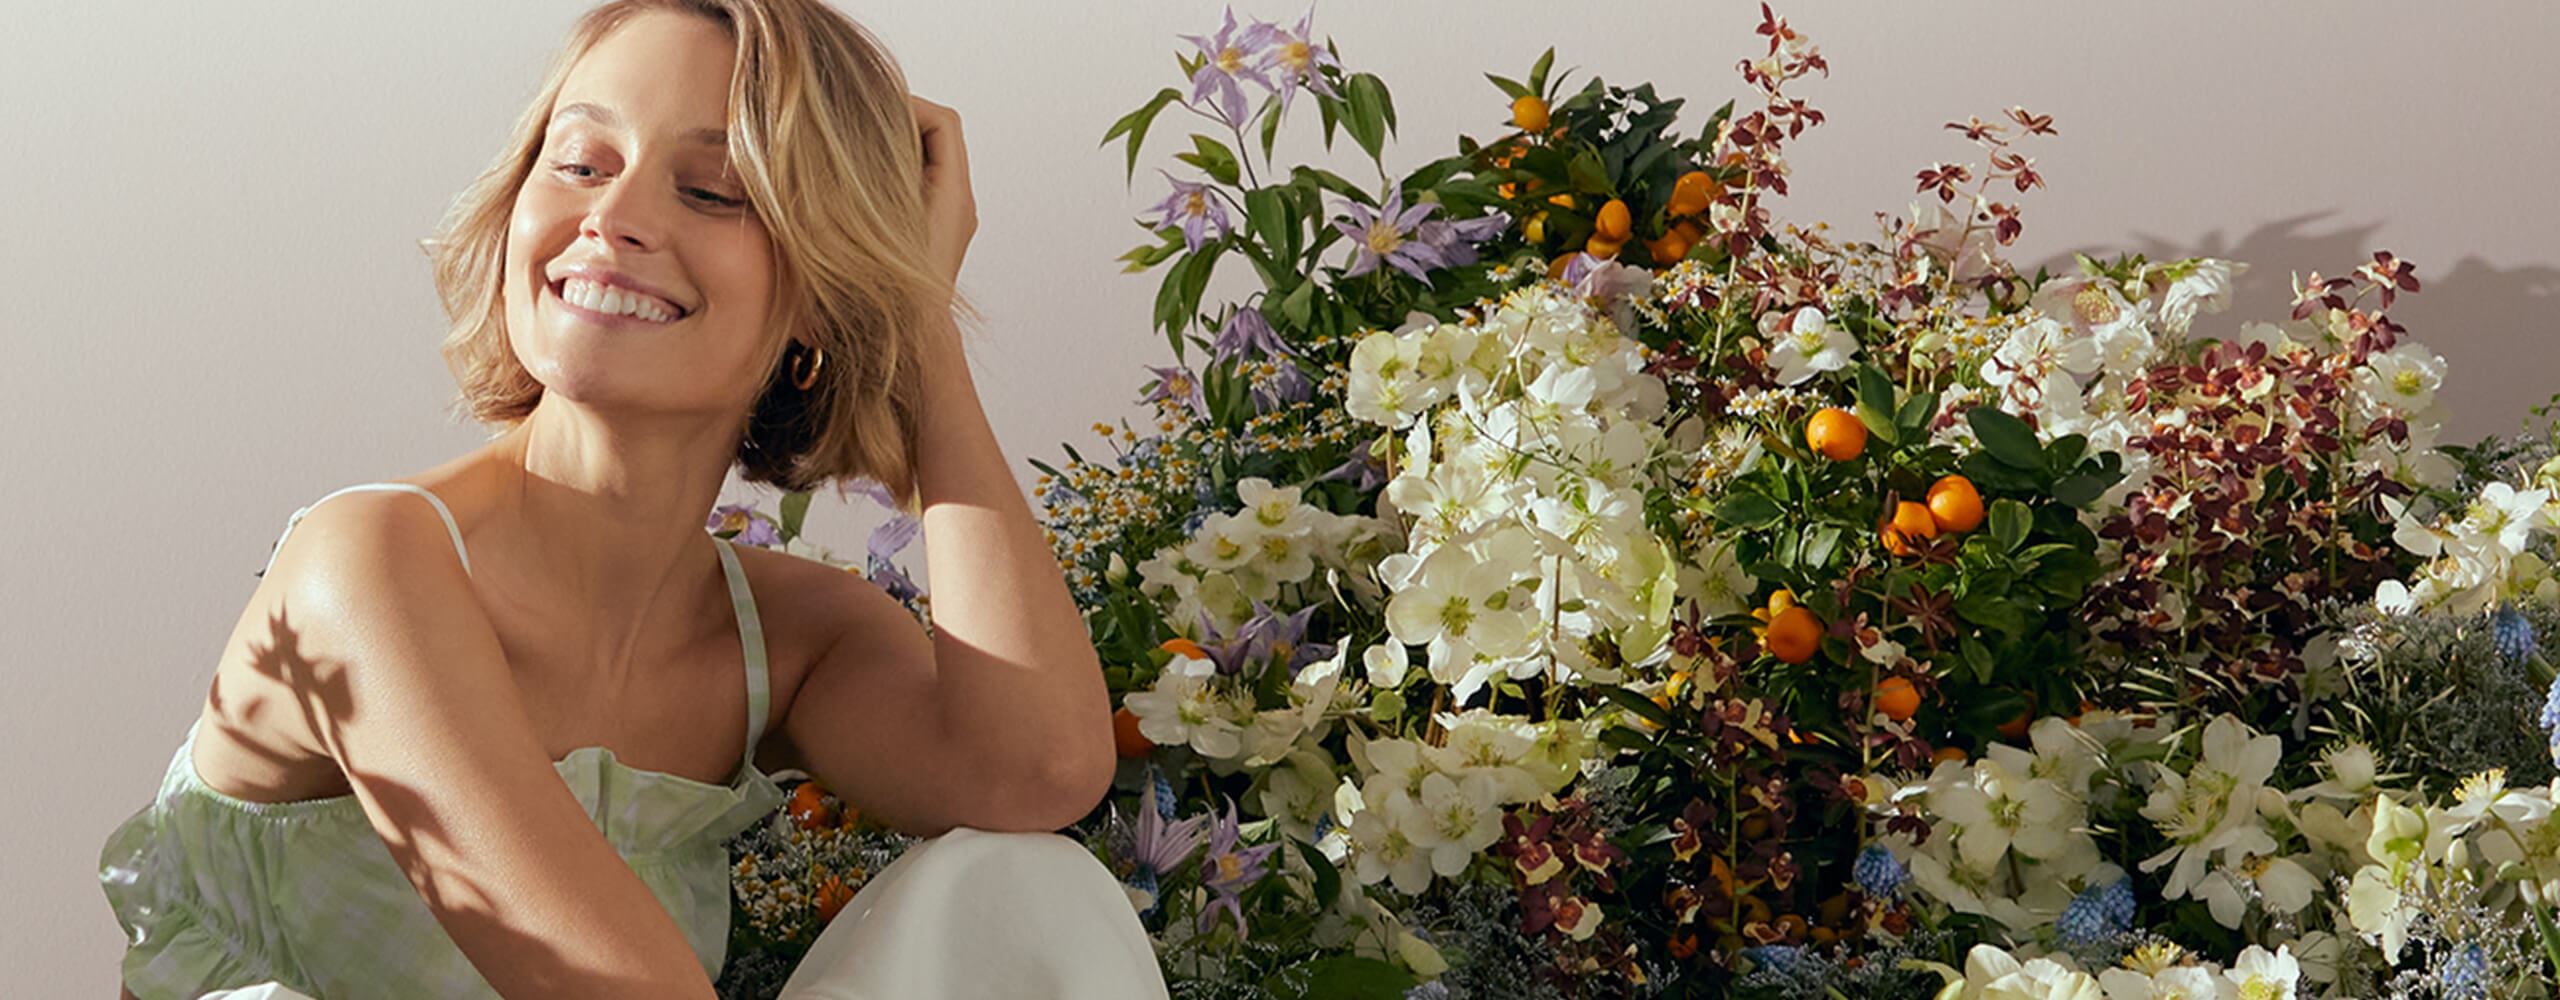 Vue d’une mannequin aux cheveux blonds courts regardant vers le bas, avec un arrangement floral derrière elle.